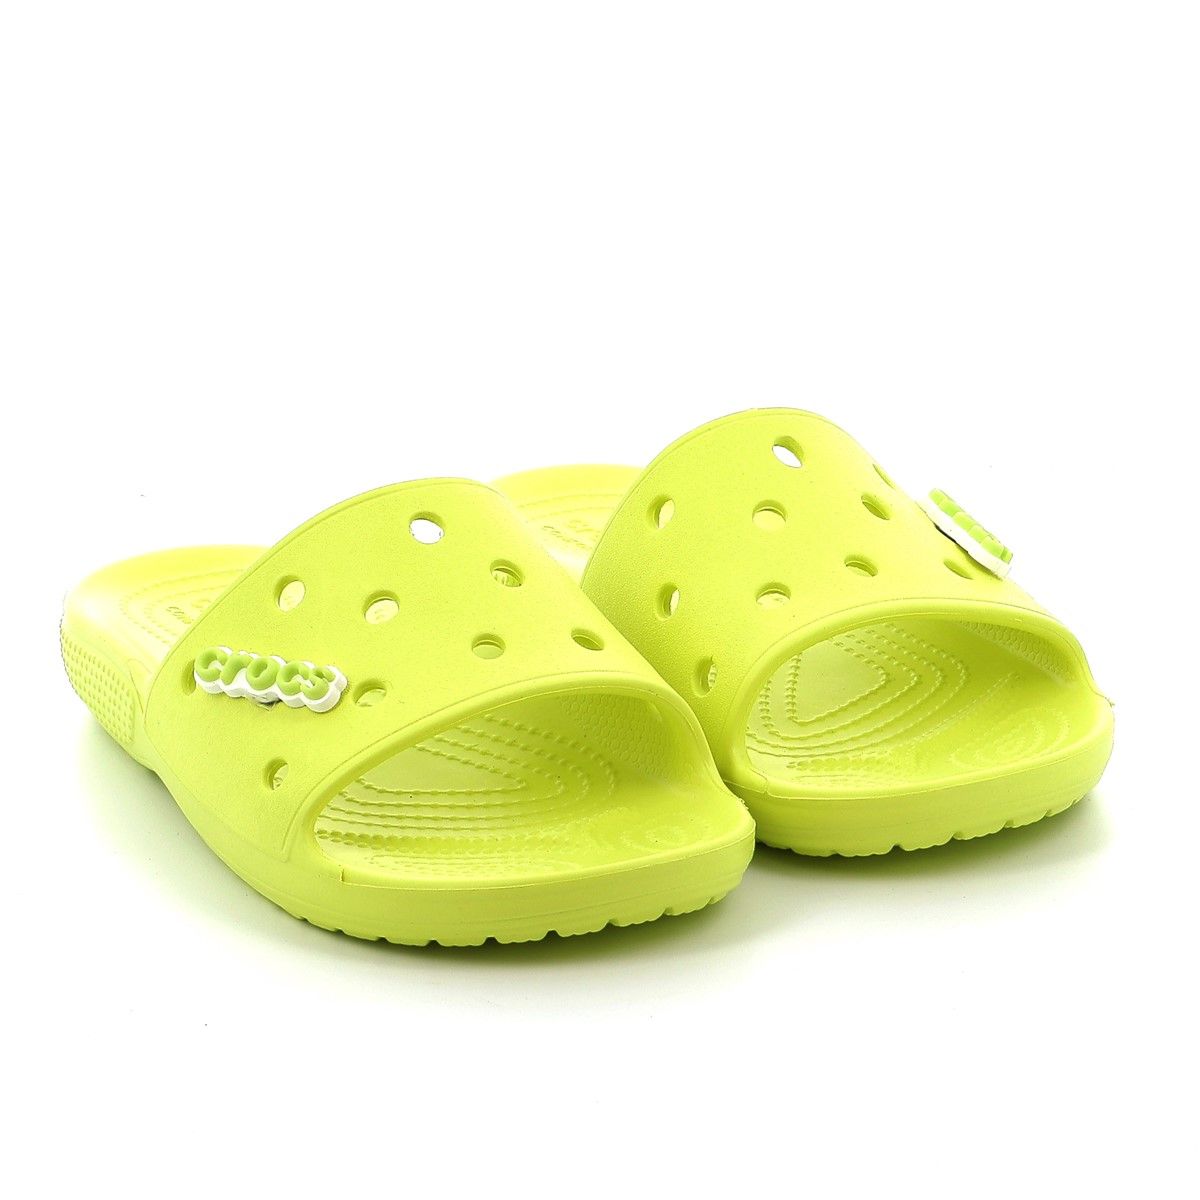 Γυναικεία Σαγιονάρα Crocs Classic Crocs Slide Χρώματος Κίτρινο 206121-738